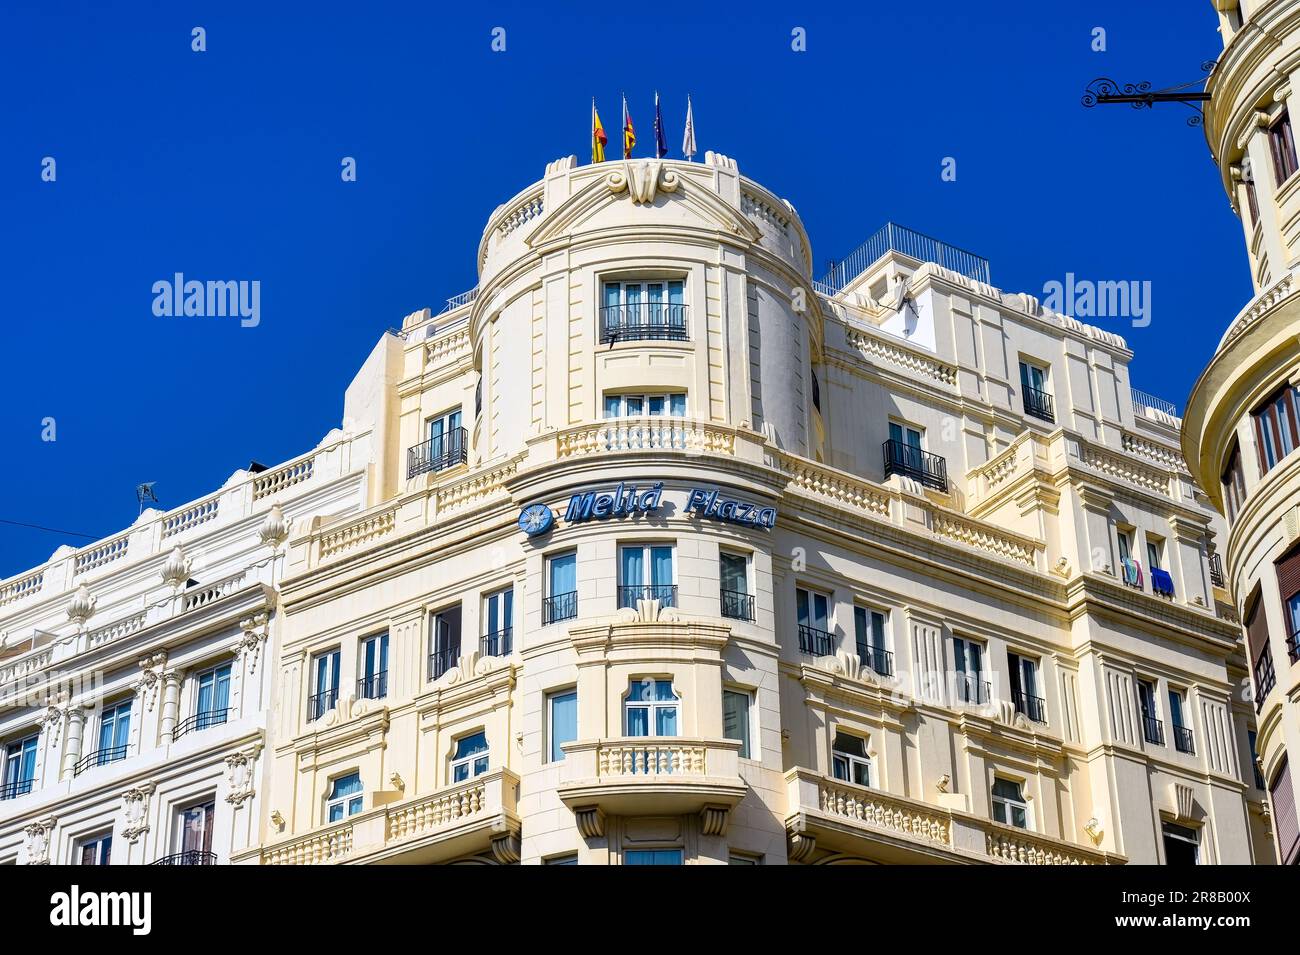 Valencia, Spagna - 15 luglio 2022: Melia Plaza Hotel. L'architettura esterna del famoso edificio Foto Stock